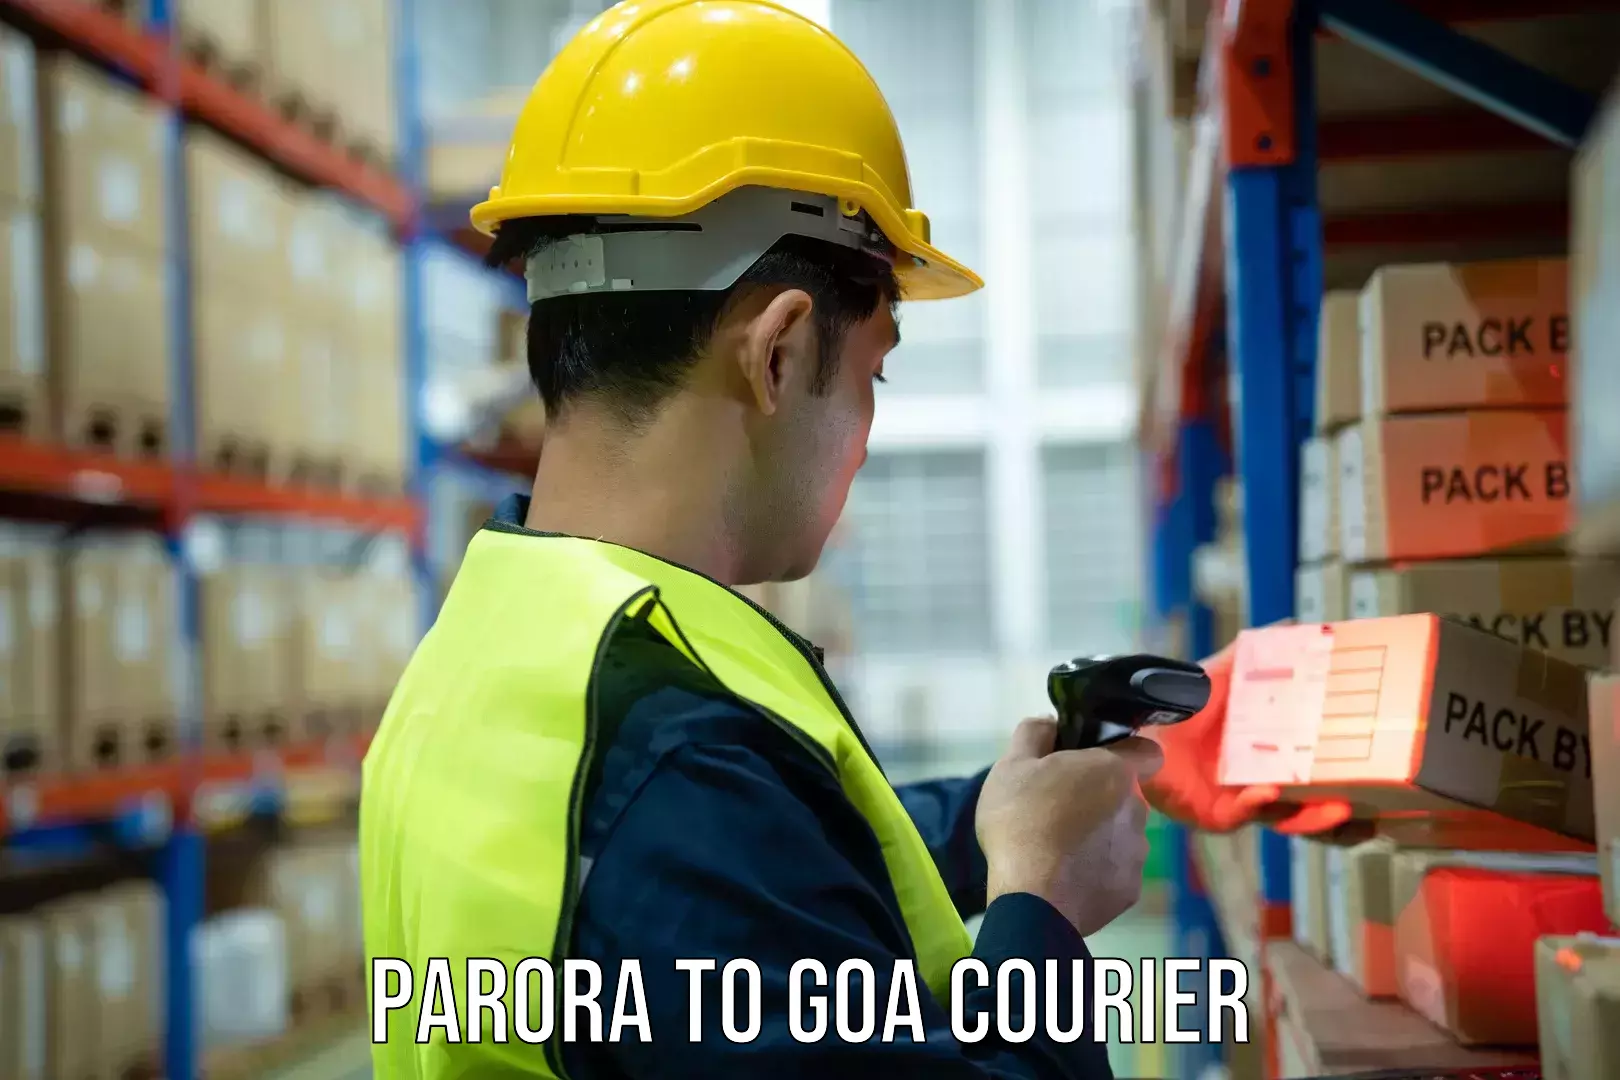 Reliable courier service Parora to Panaji